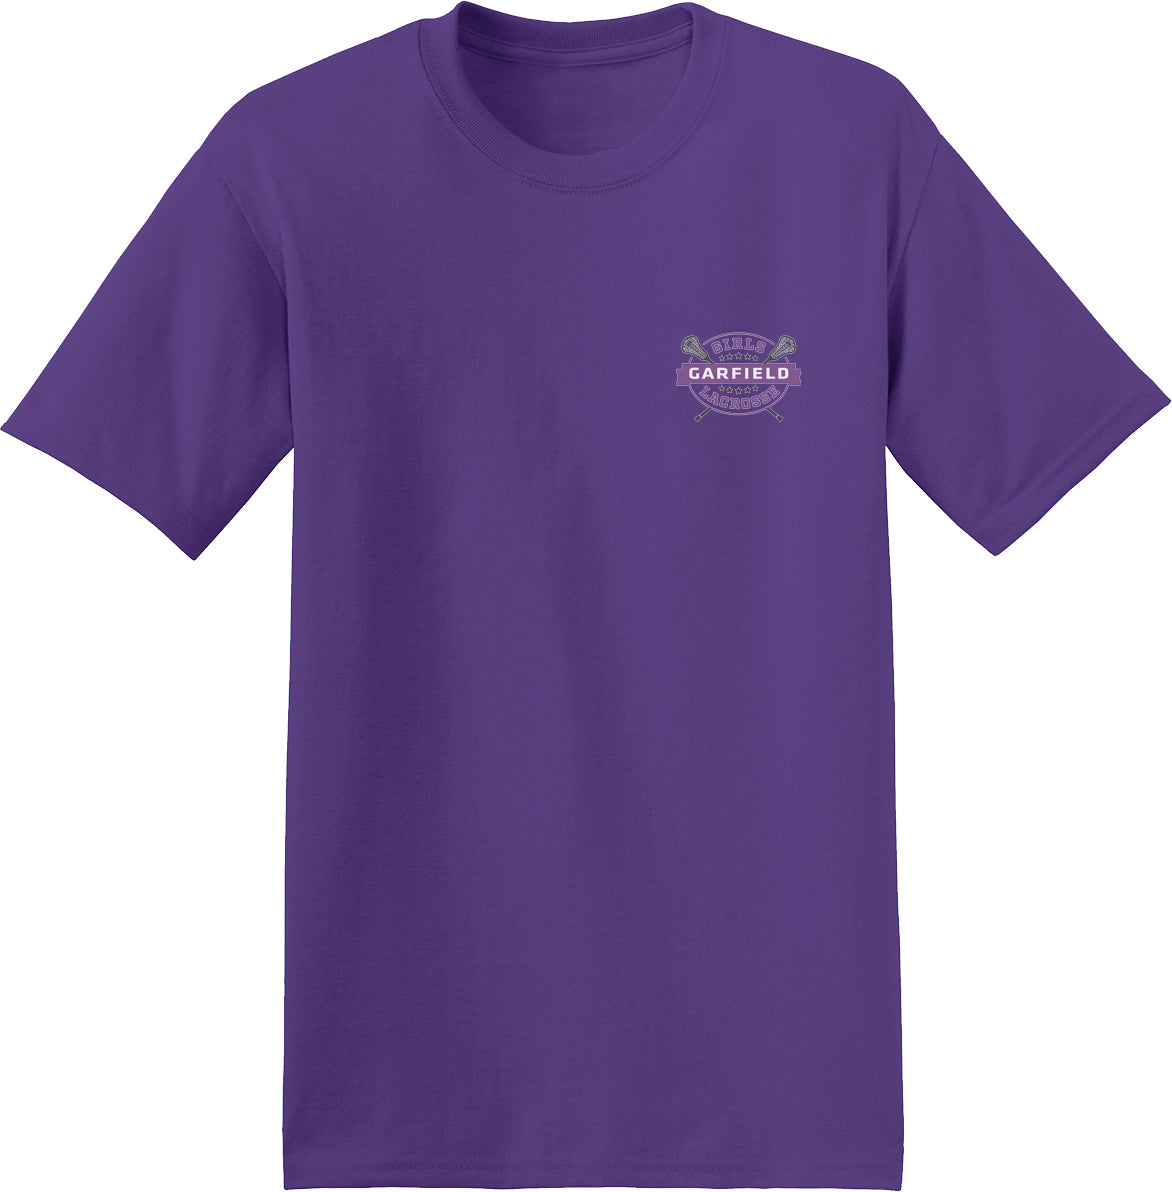 Garfield Purple T-Shirt